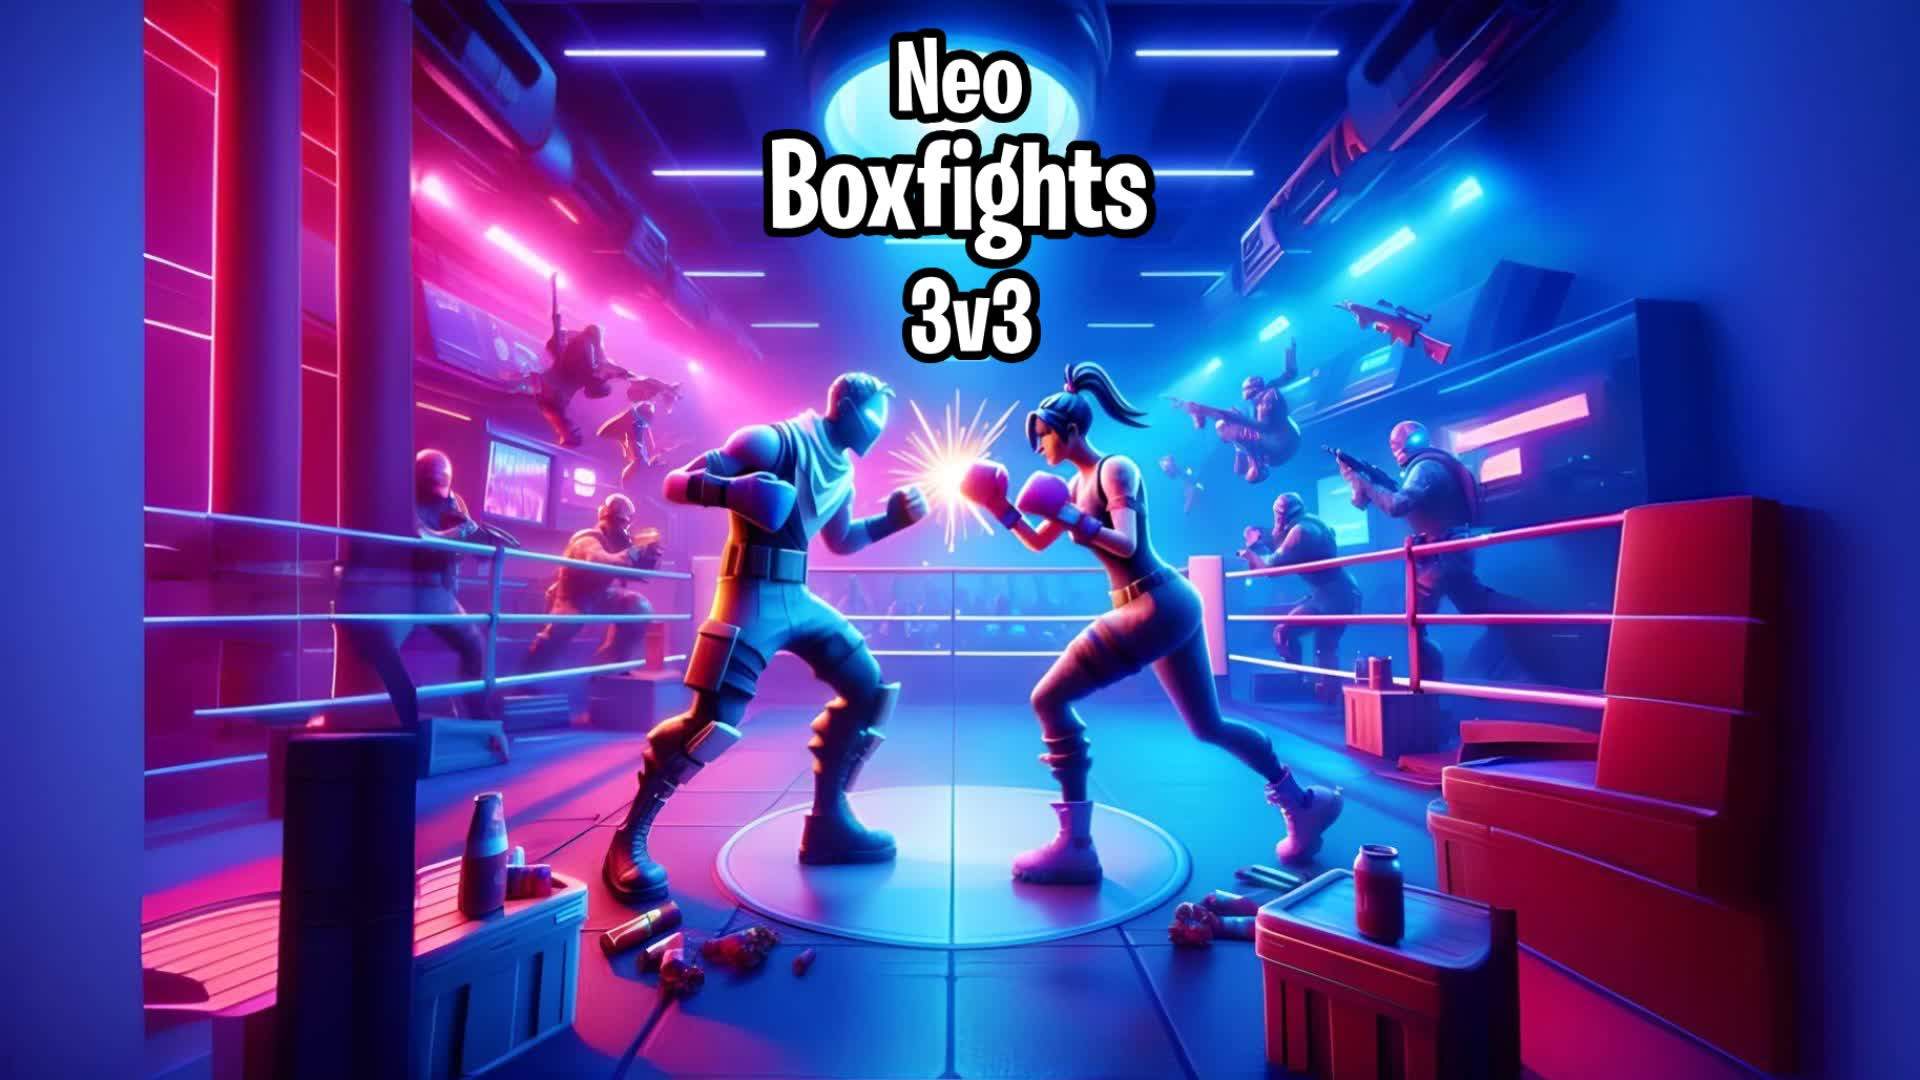 Neo 3v3 Boxfights